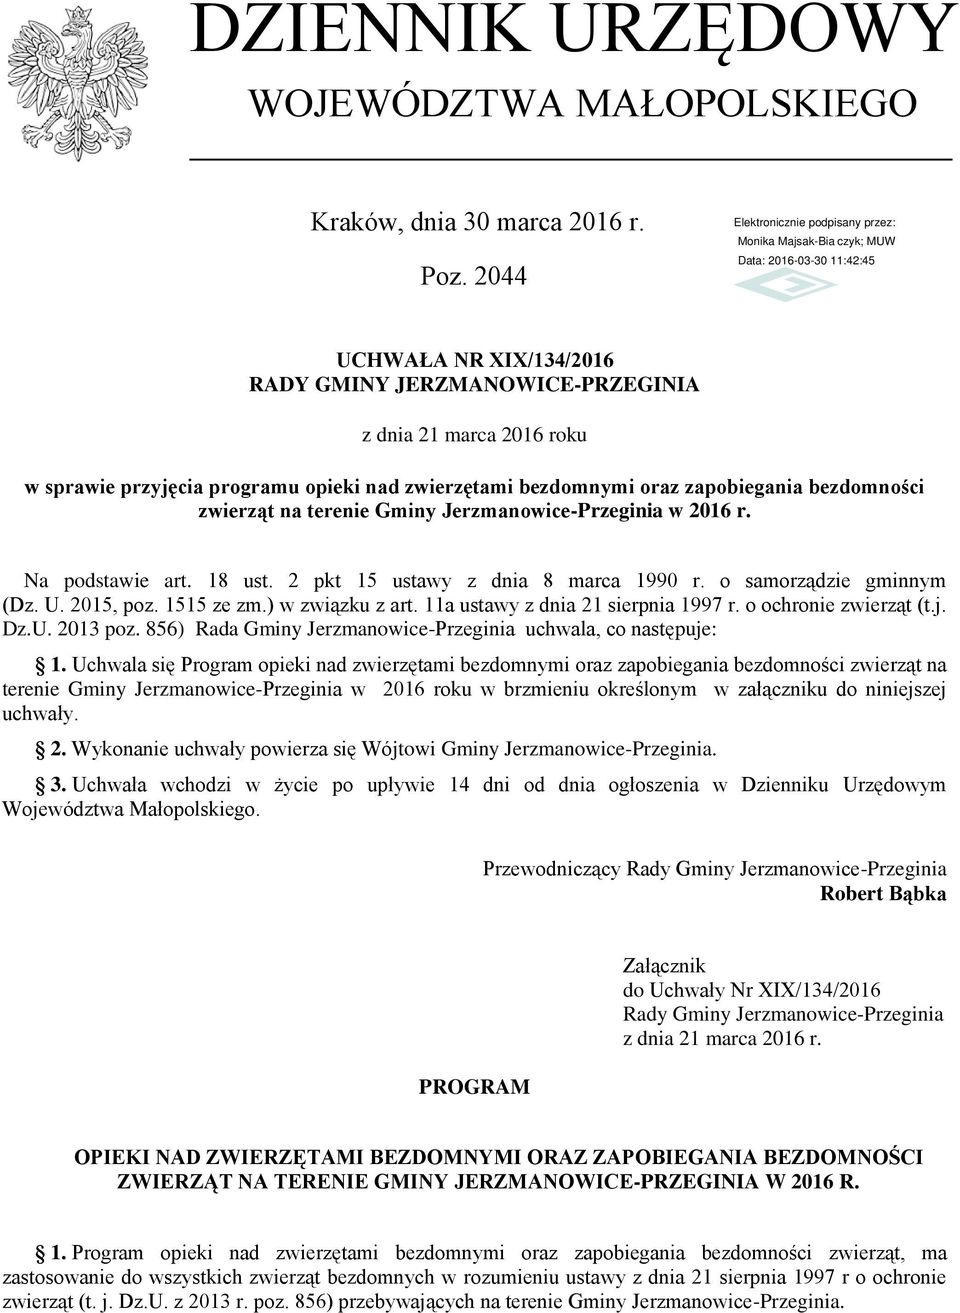 terenie Gminy Jerzmanowice-Przeginia w 2016 r. Na podstawie art. 18 ust. 2 pkt 15 ustawy z dnia 8 marca 1990 r. o samorządzie gminnym (Dz. U. 2015, poz. 1515 ze zm.) w związku z art.